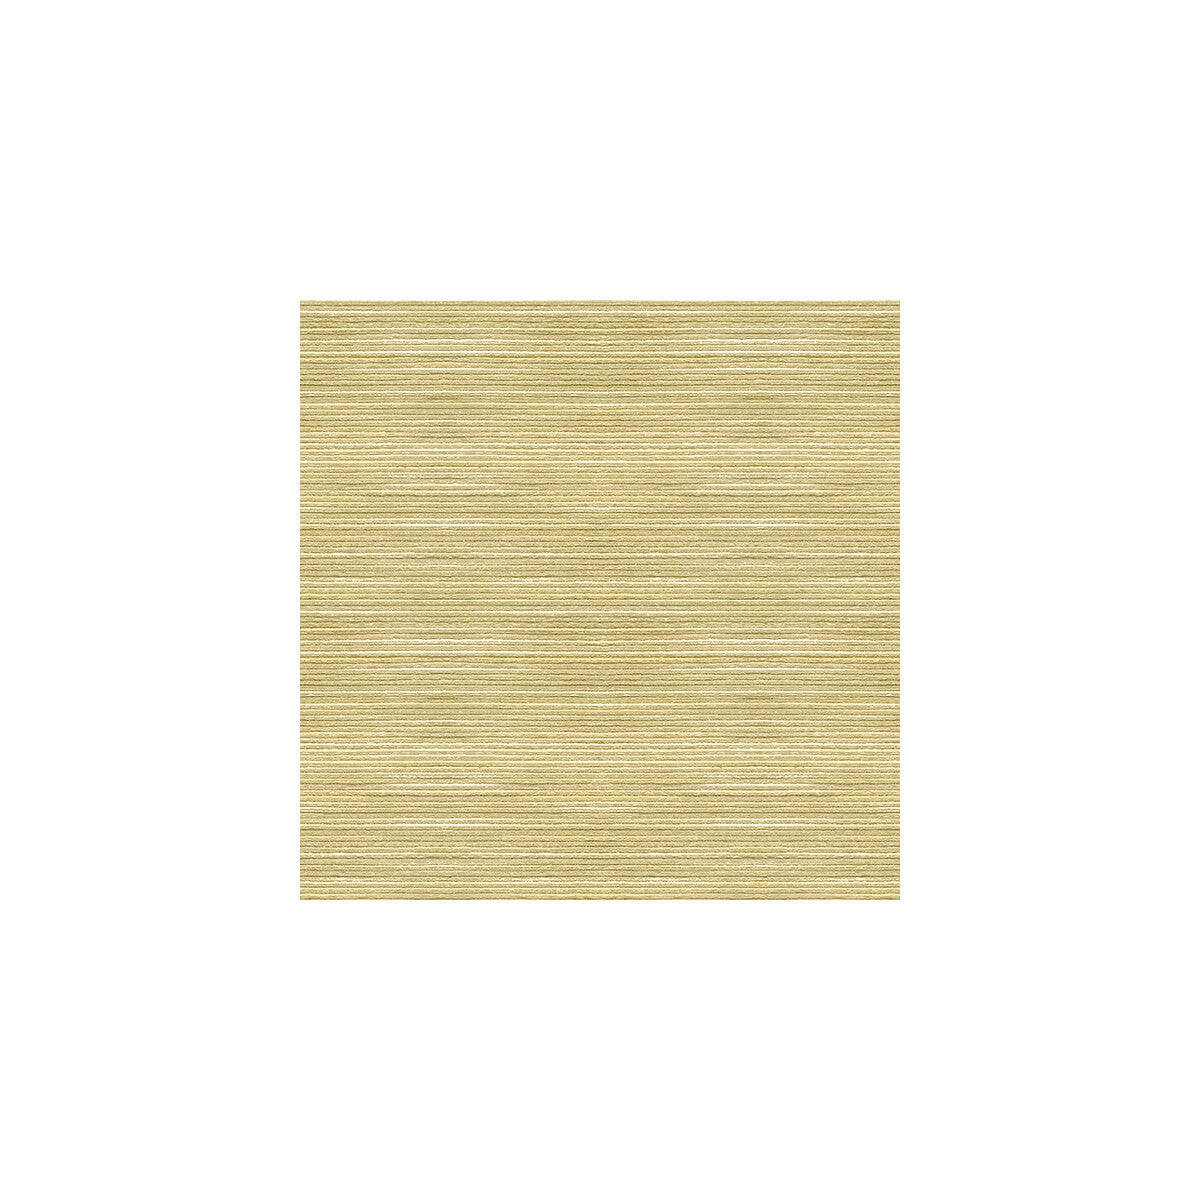 Kravet Basics fabric in 3805-1611 color - pattern 3805.1611.0 - by Kravet Basics